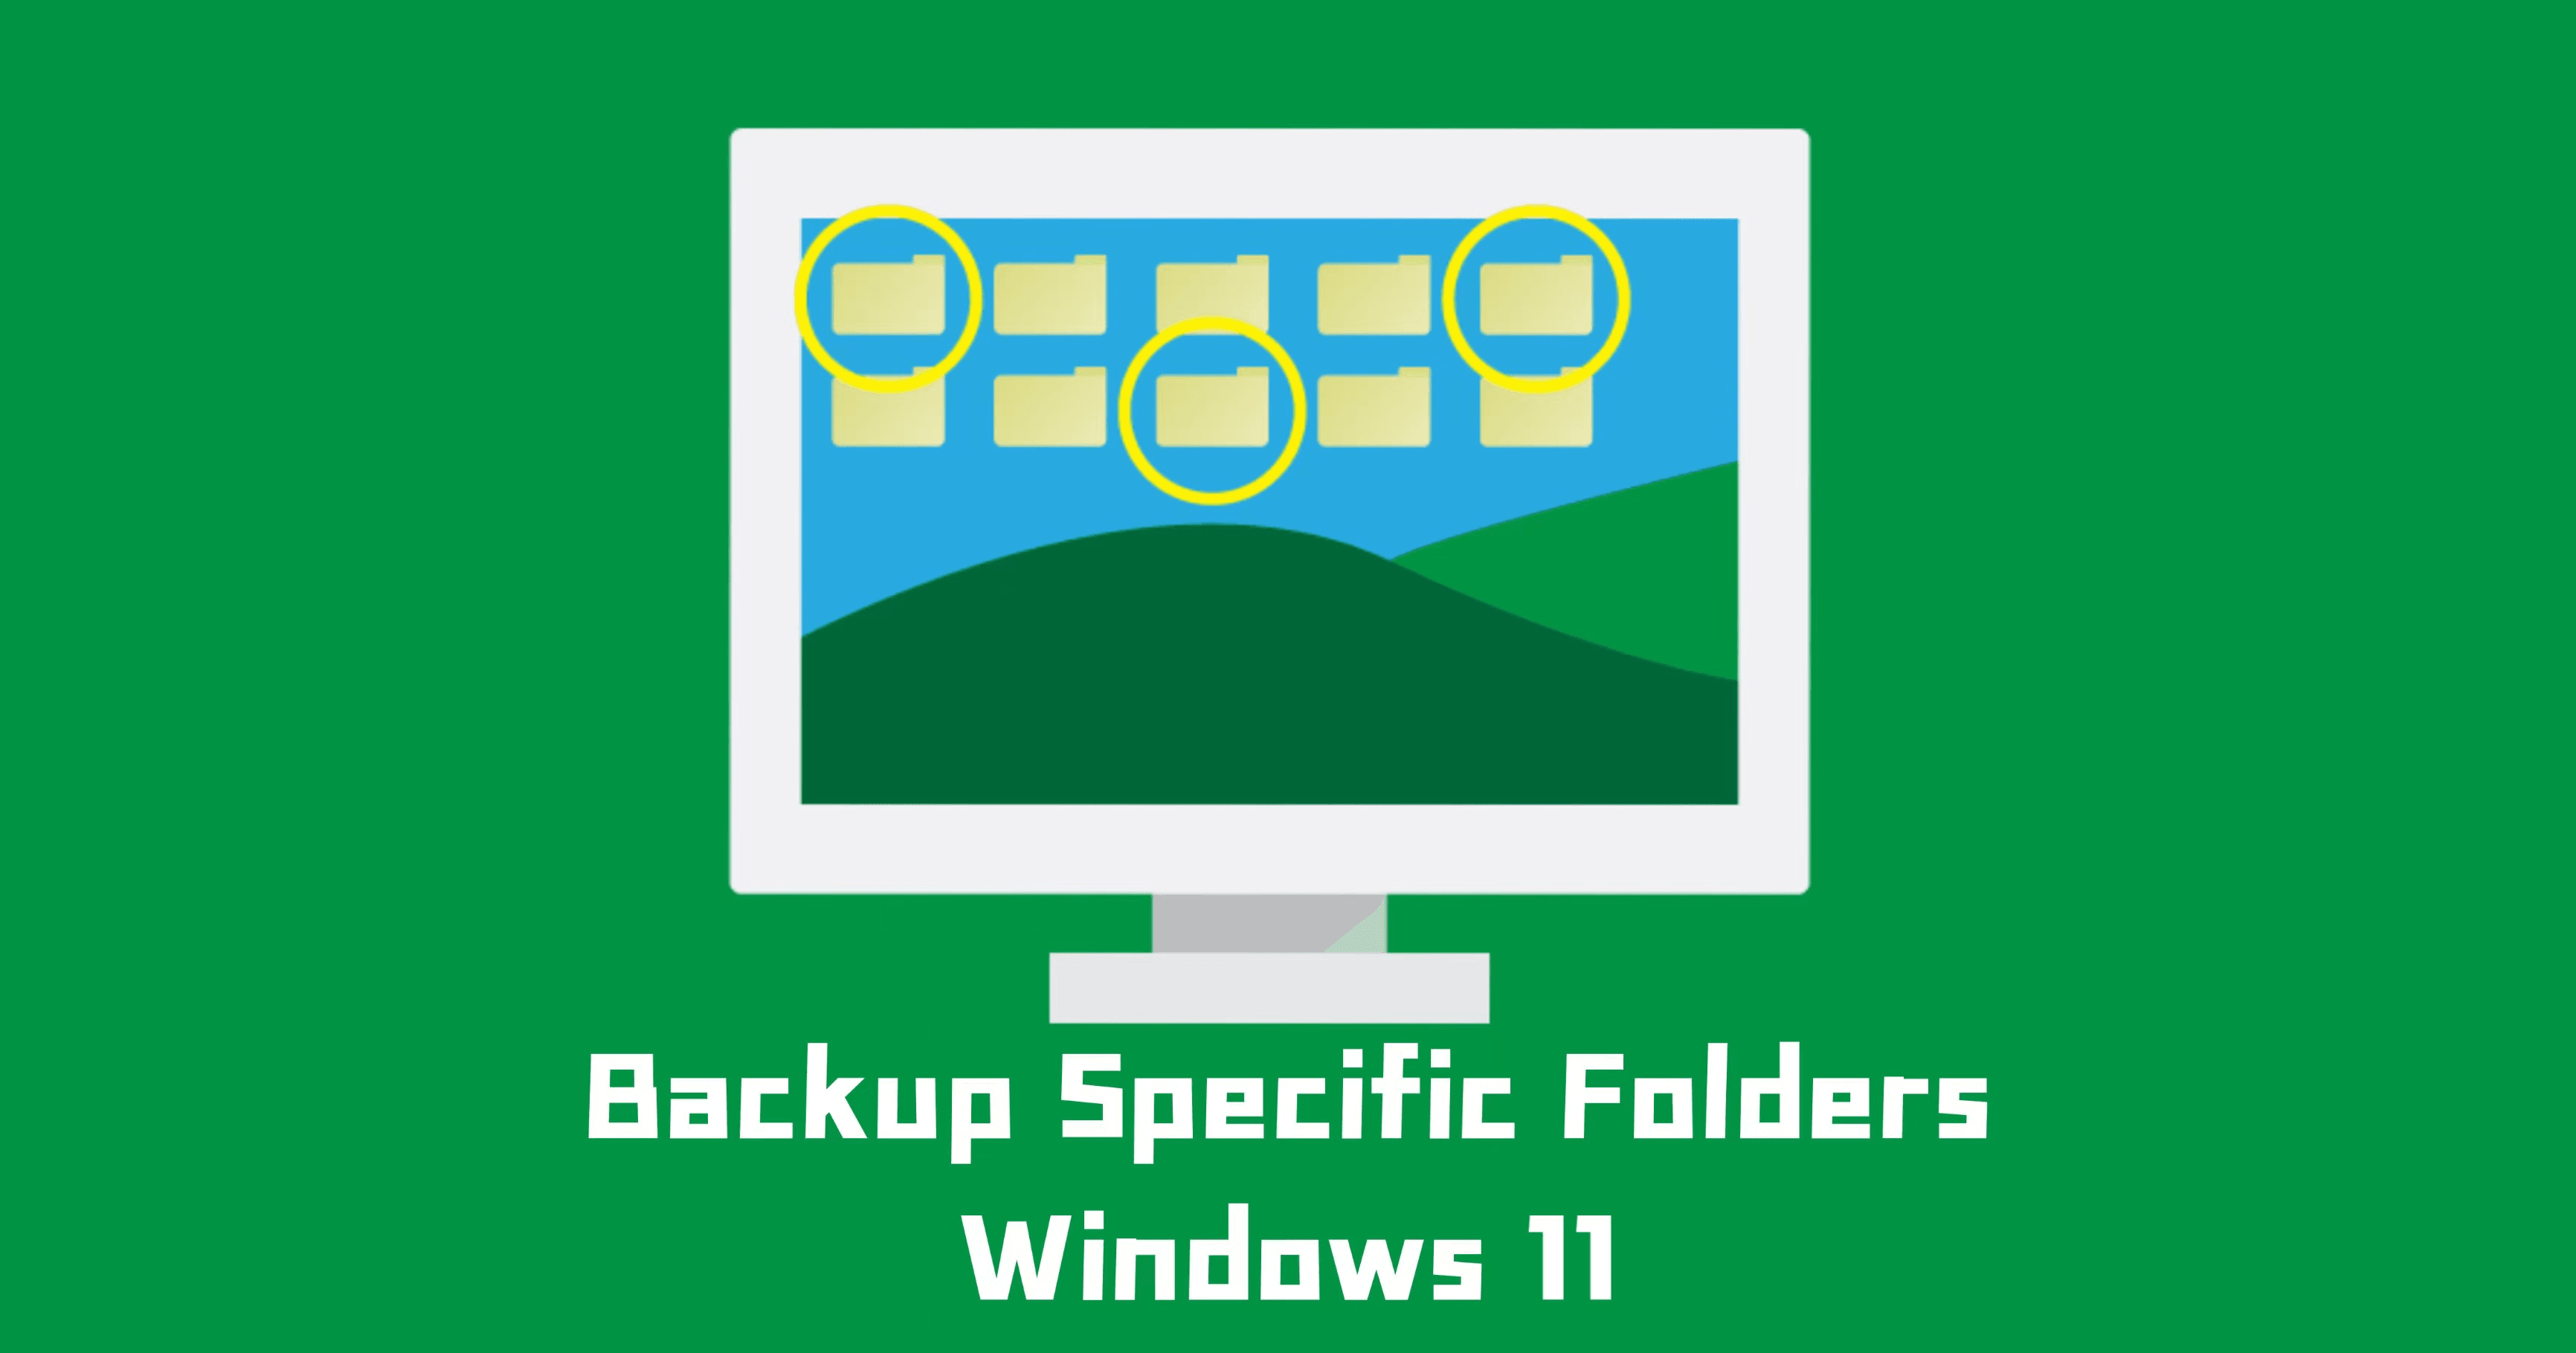 Backup Specific Folders on Windows 11